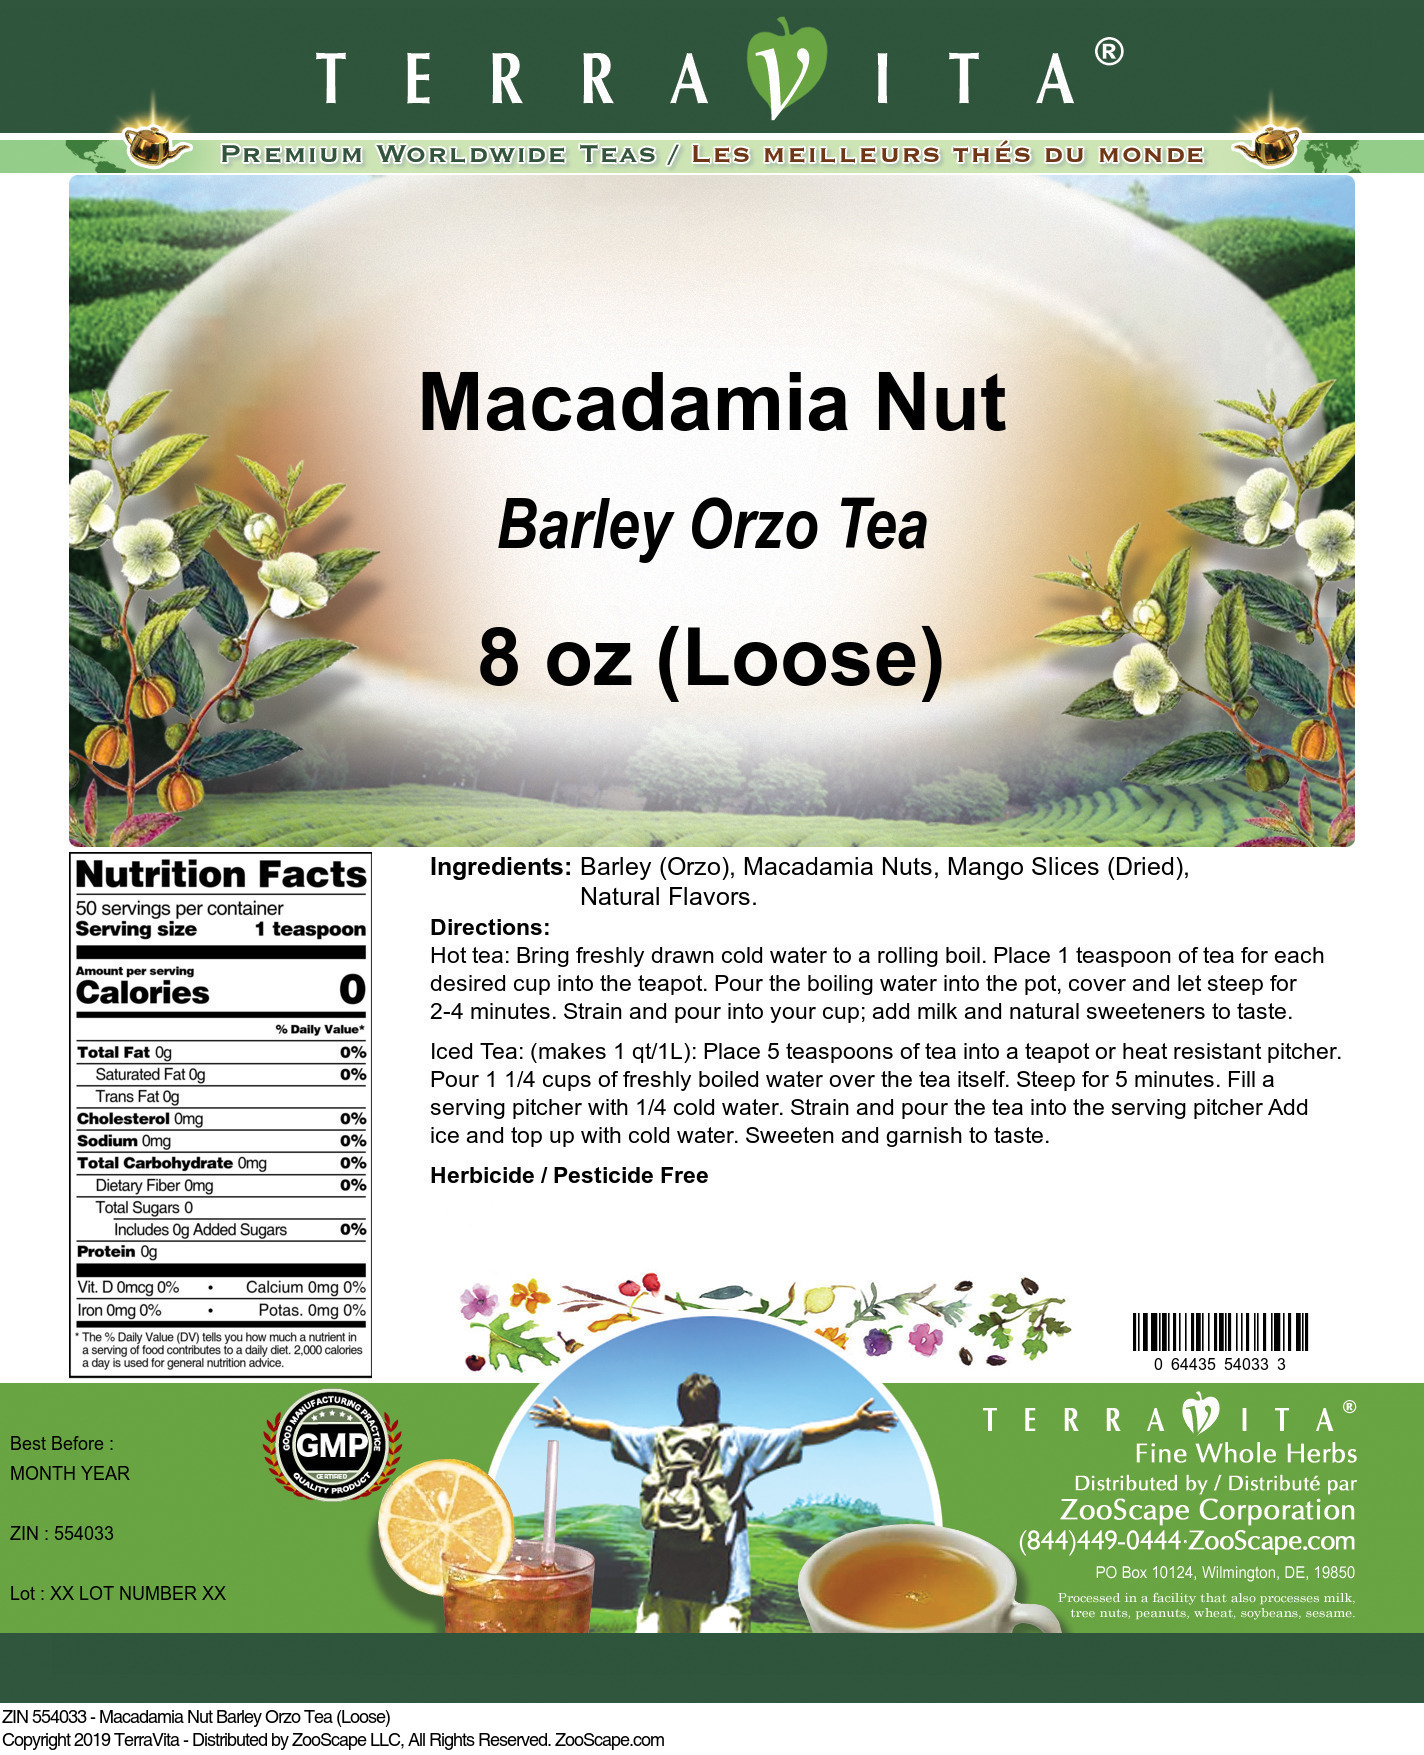 Macadamia Nut Barley Orzo Tea (Loose) - Label